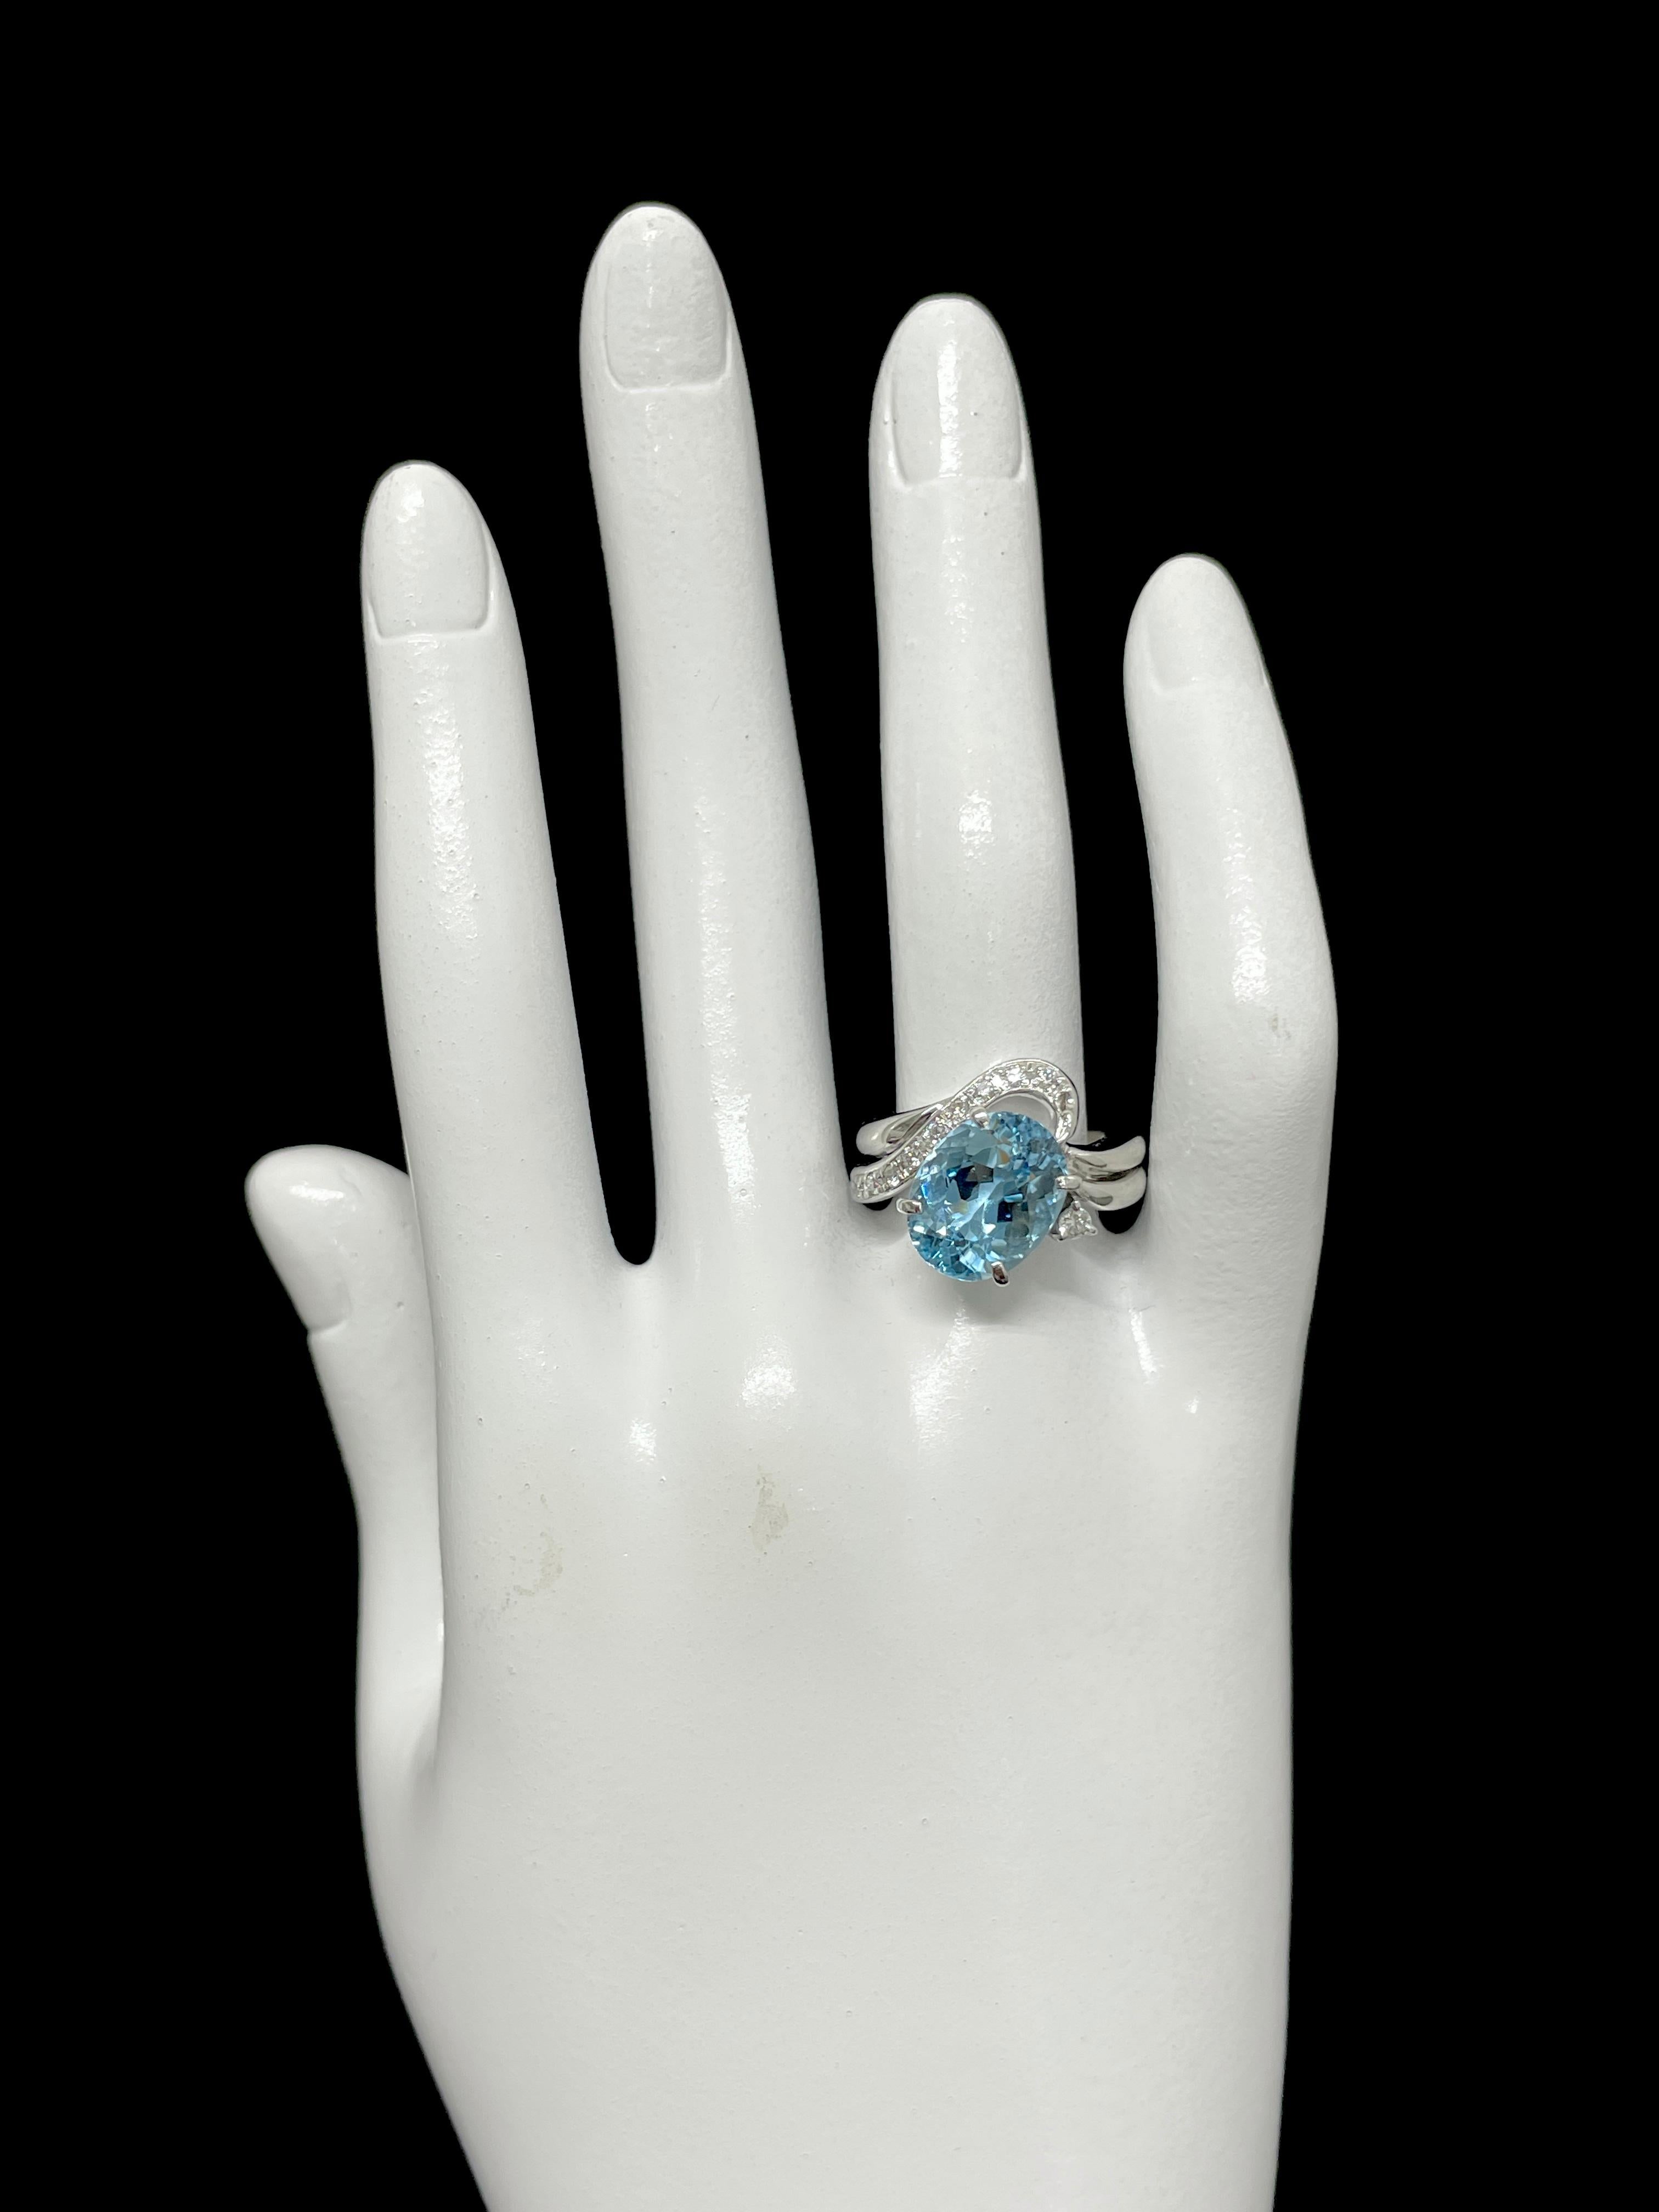 5.03 Carat Natural Aquamarine and Diamond Cocktail Ring Set in Platinum For Sale 1